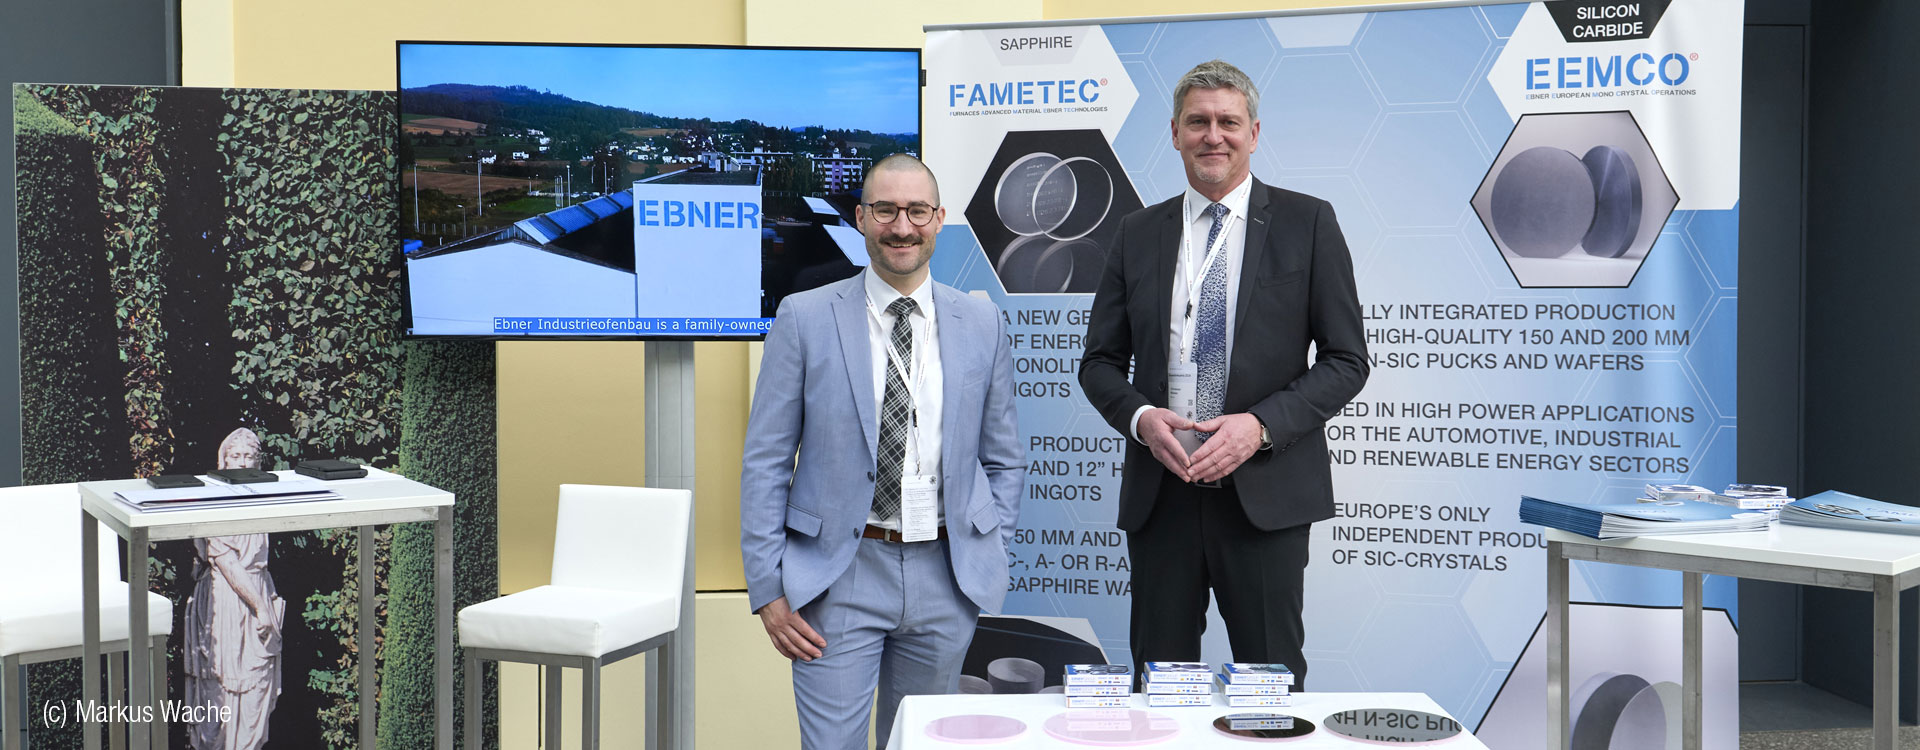 FAMETEC at Invest in Austria